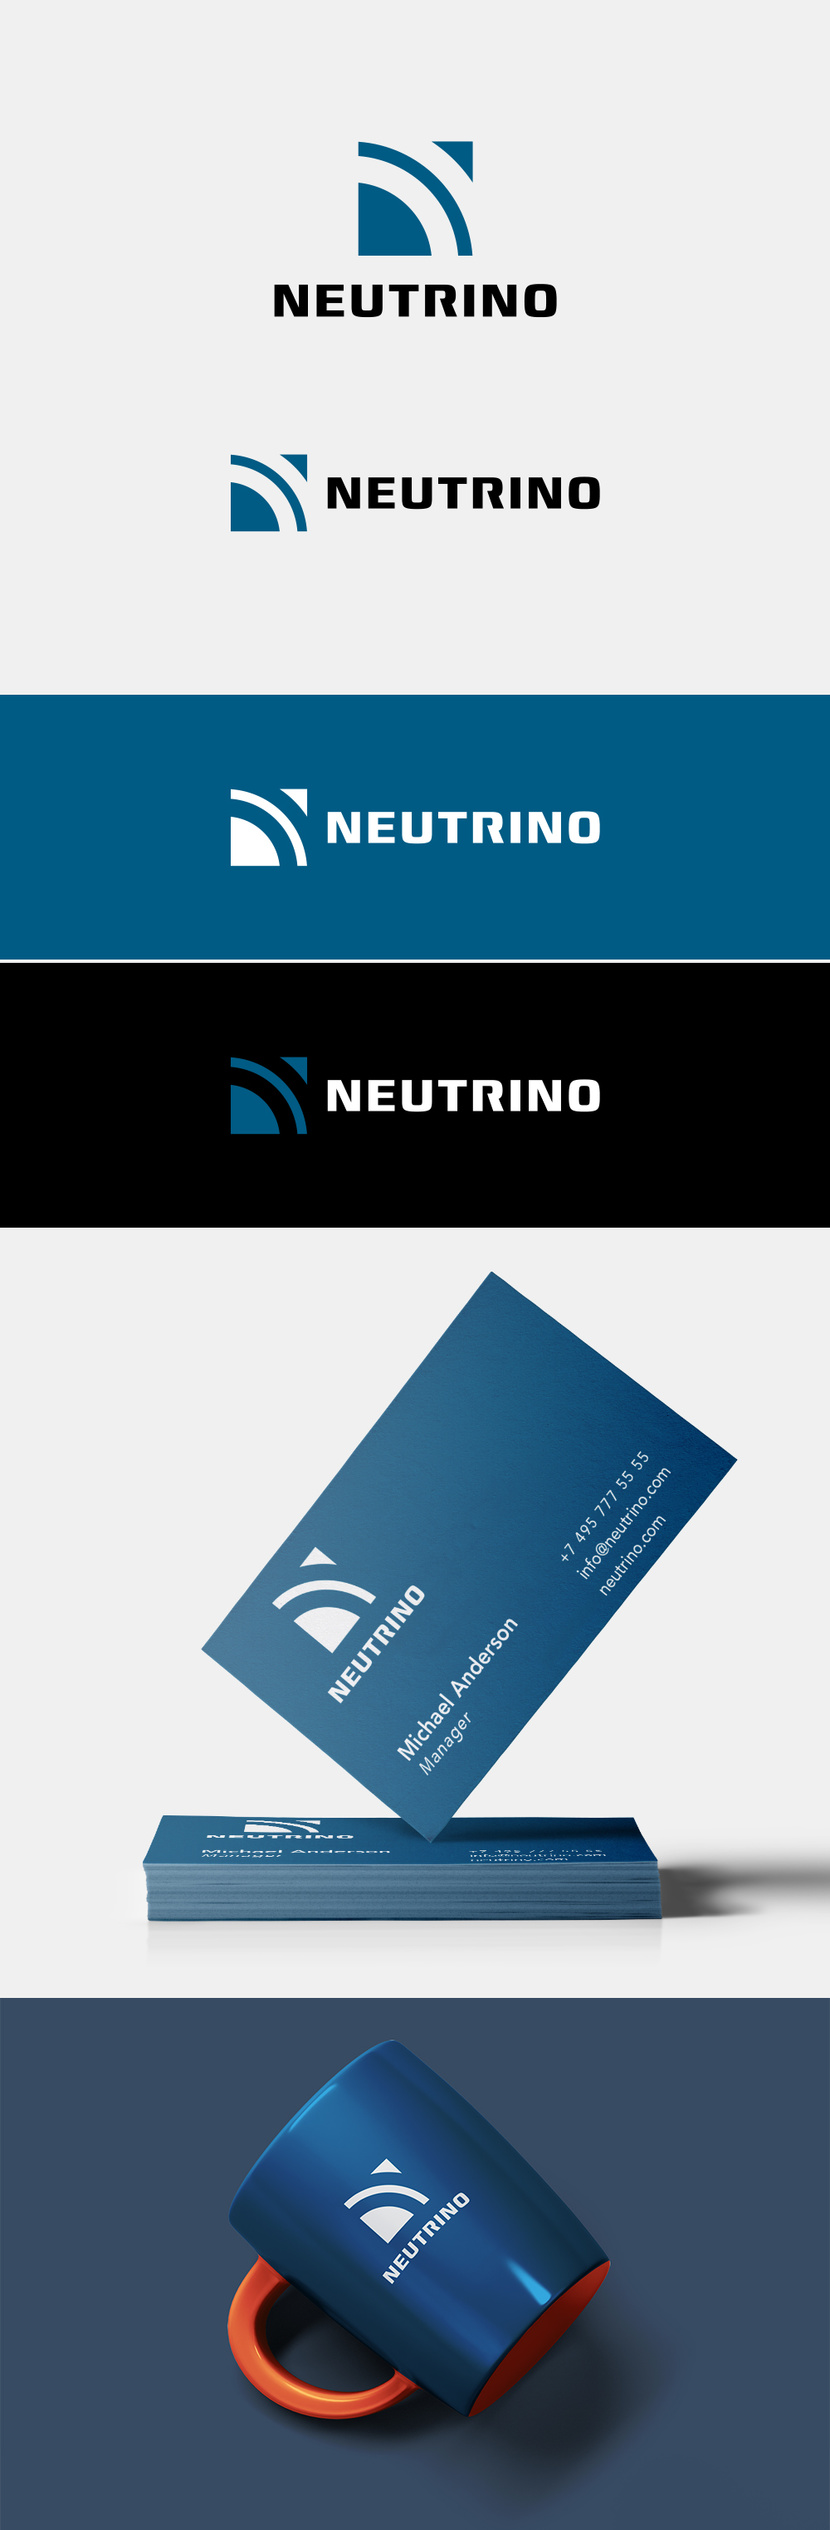 Логотип и элементы фирменного стиля для NEUTRINO  -  автор Михаил Заплавский